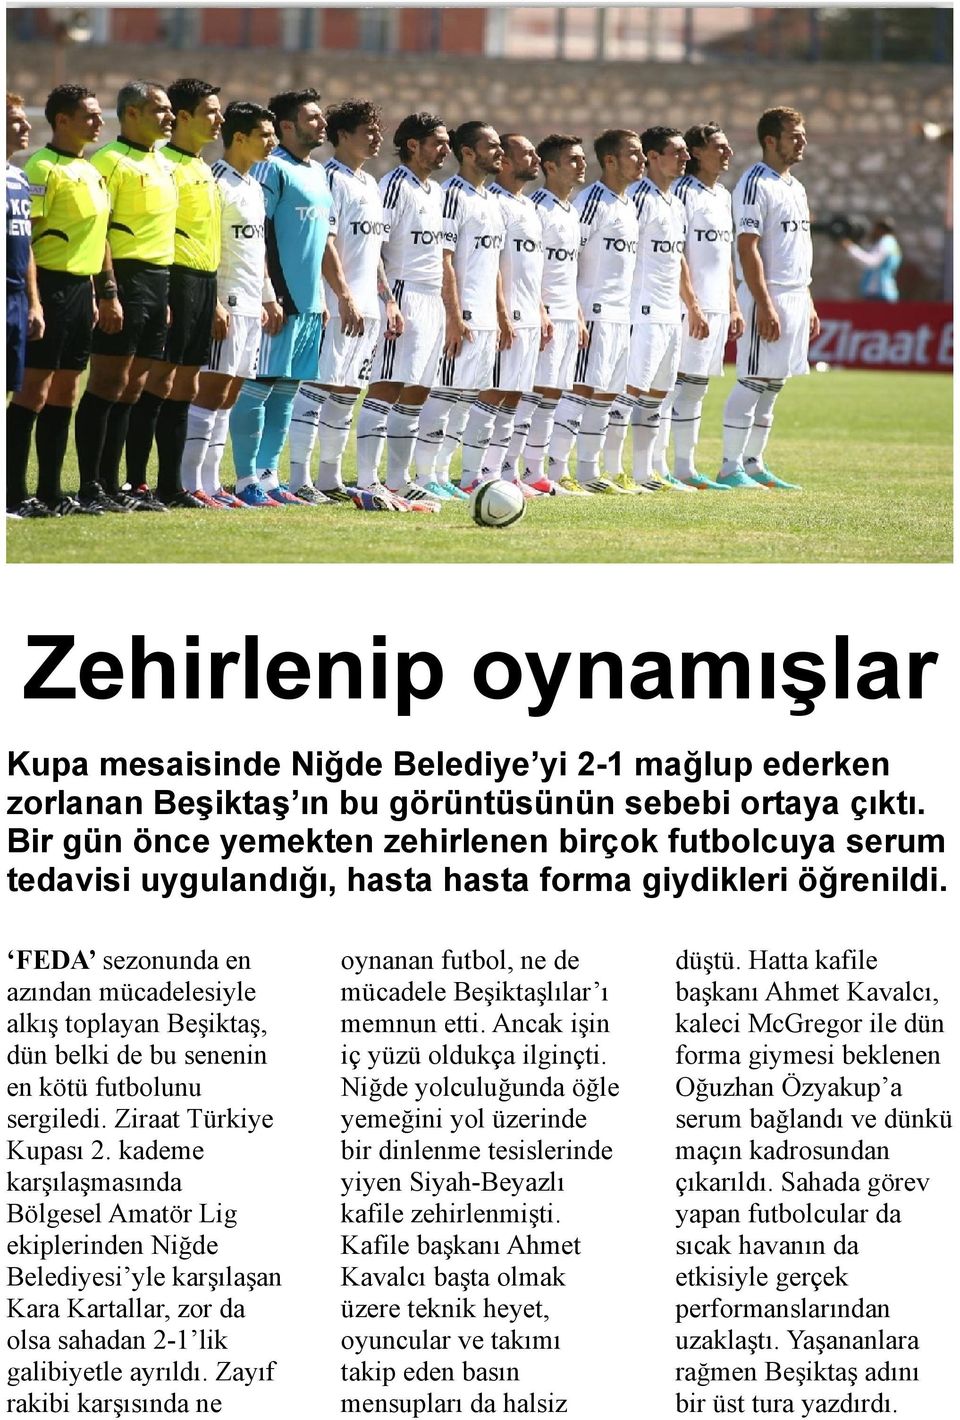 FEDA sezonunda en azından mücadelesiyle alkış toplayan Beşiktaş, dün belki de bu senenin en kötü futbolunu sergiledi. Ziraat Türkiye Kupası 2.